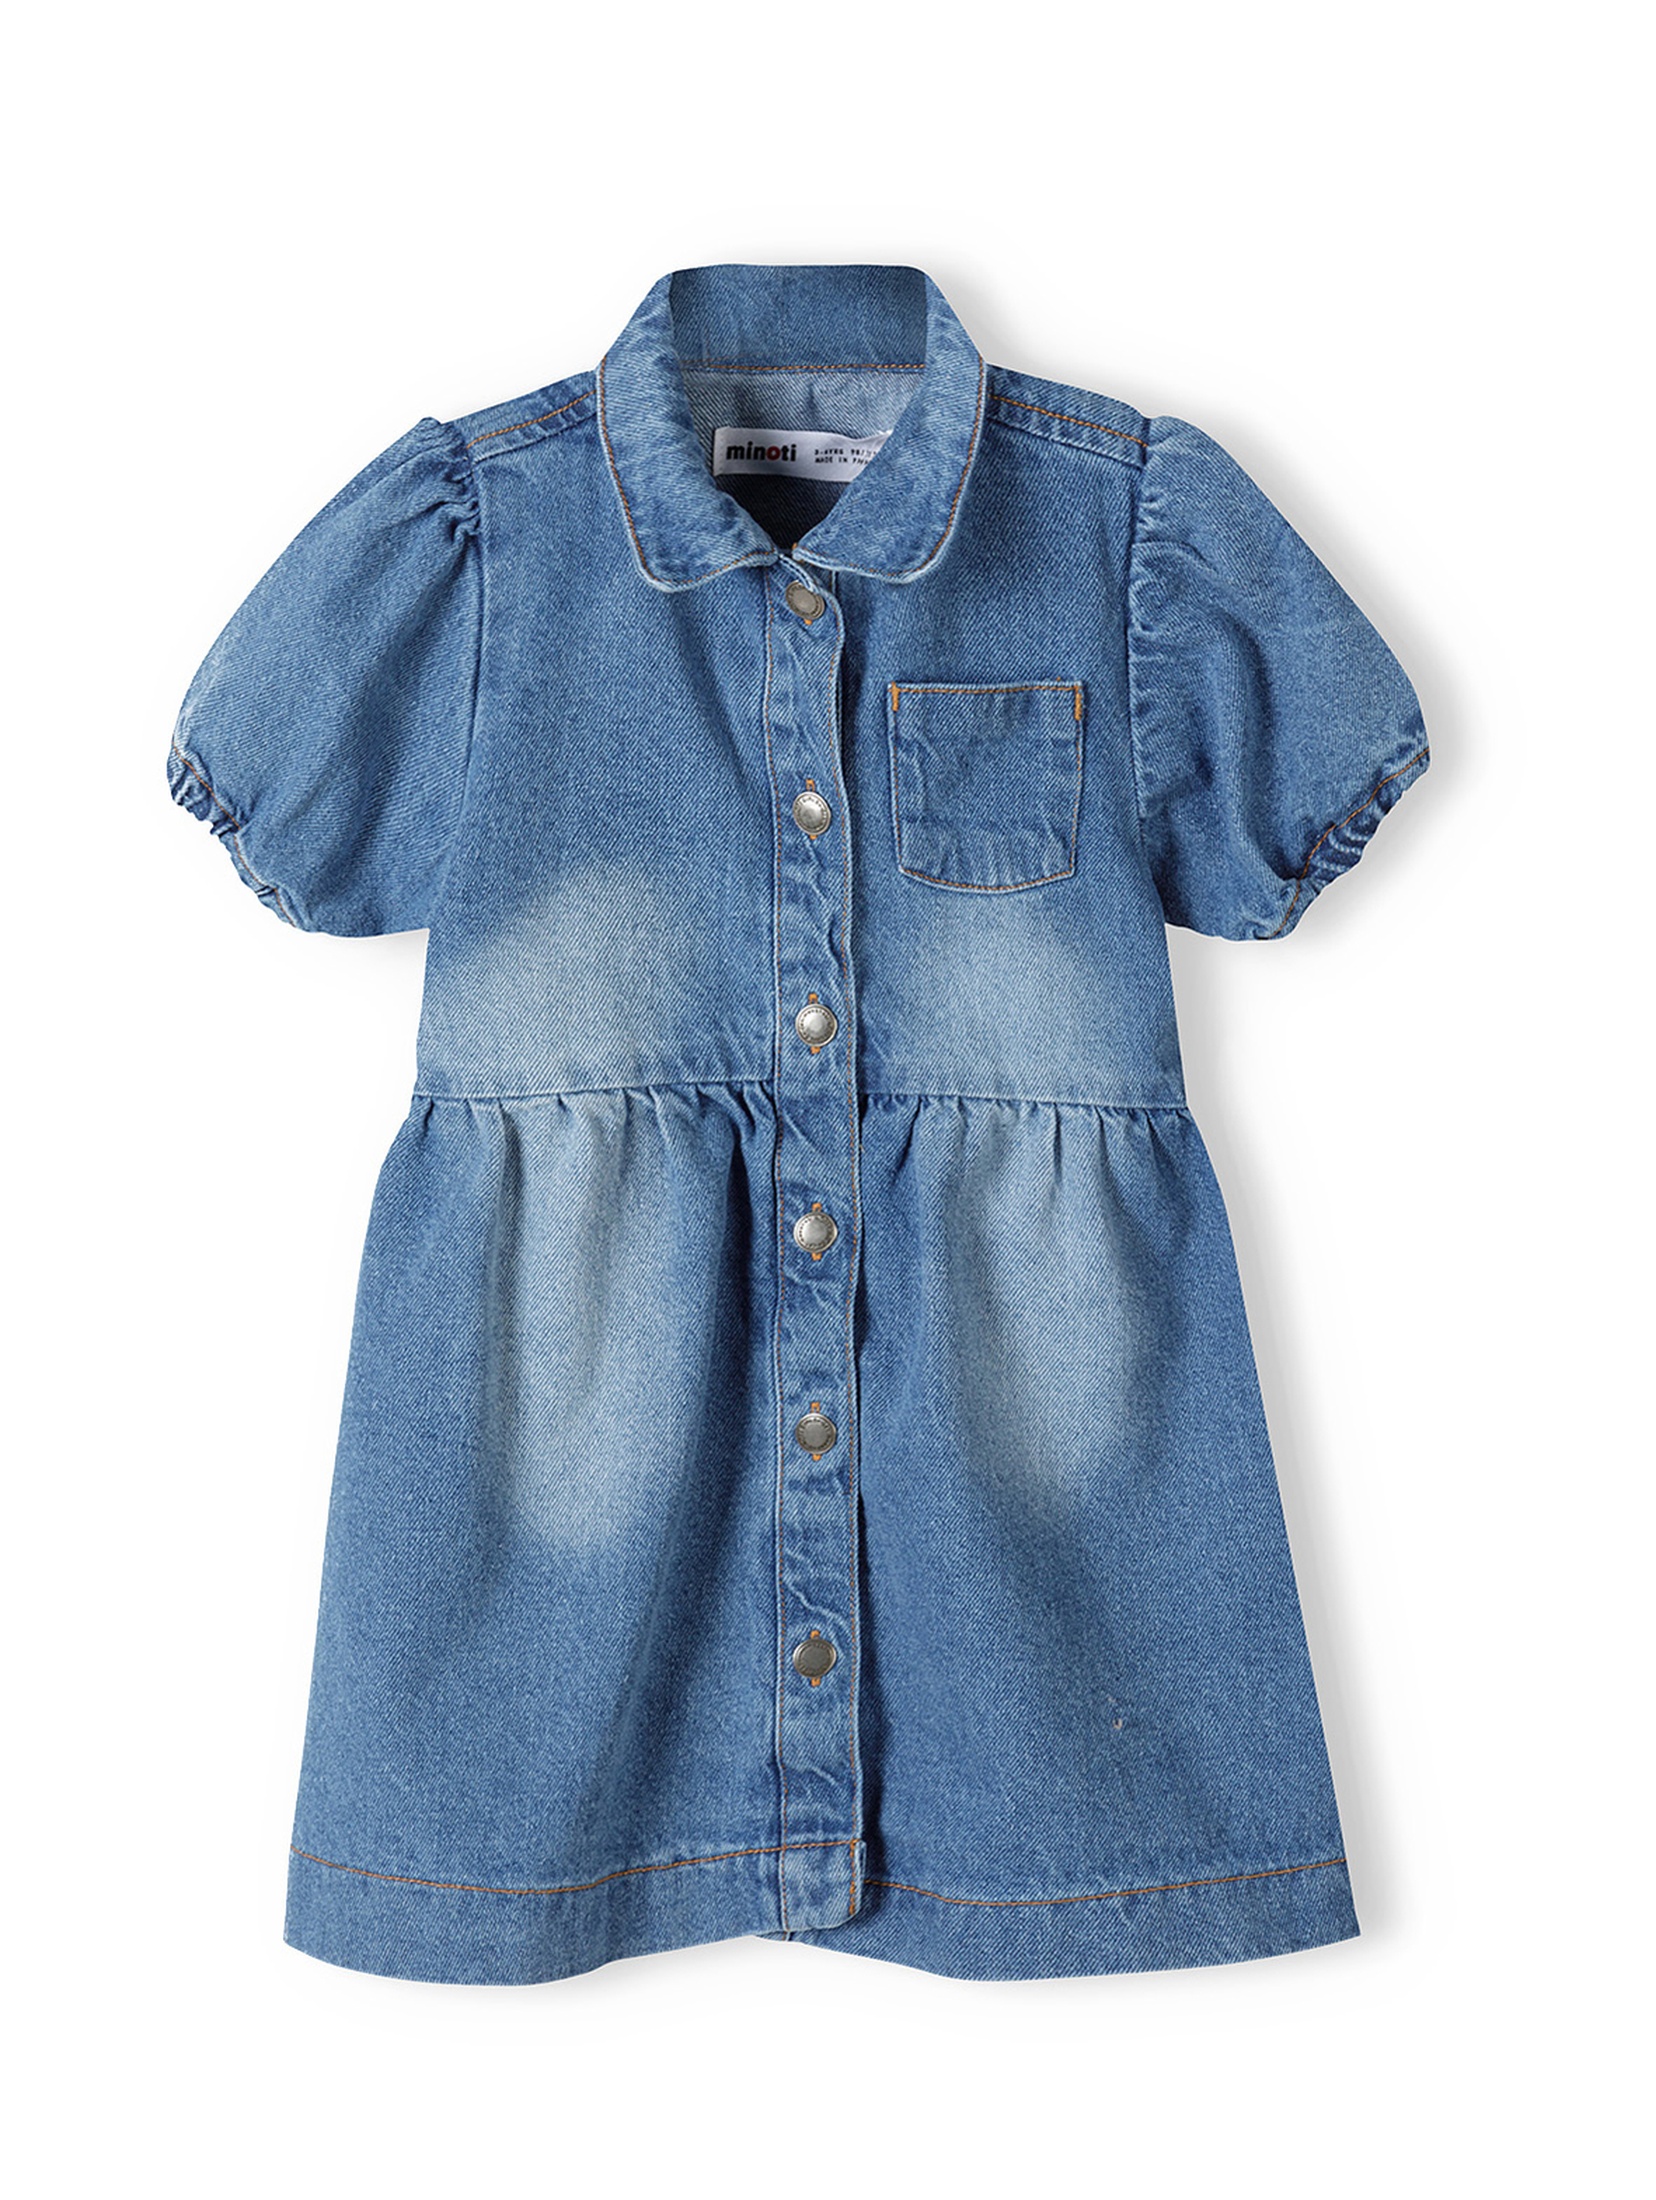 Jeansowa sukienka dla niemowlaka z krótkim rękawem